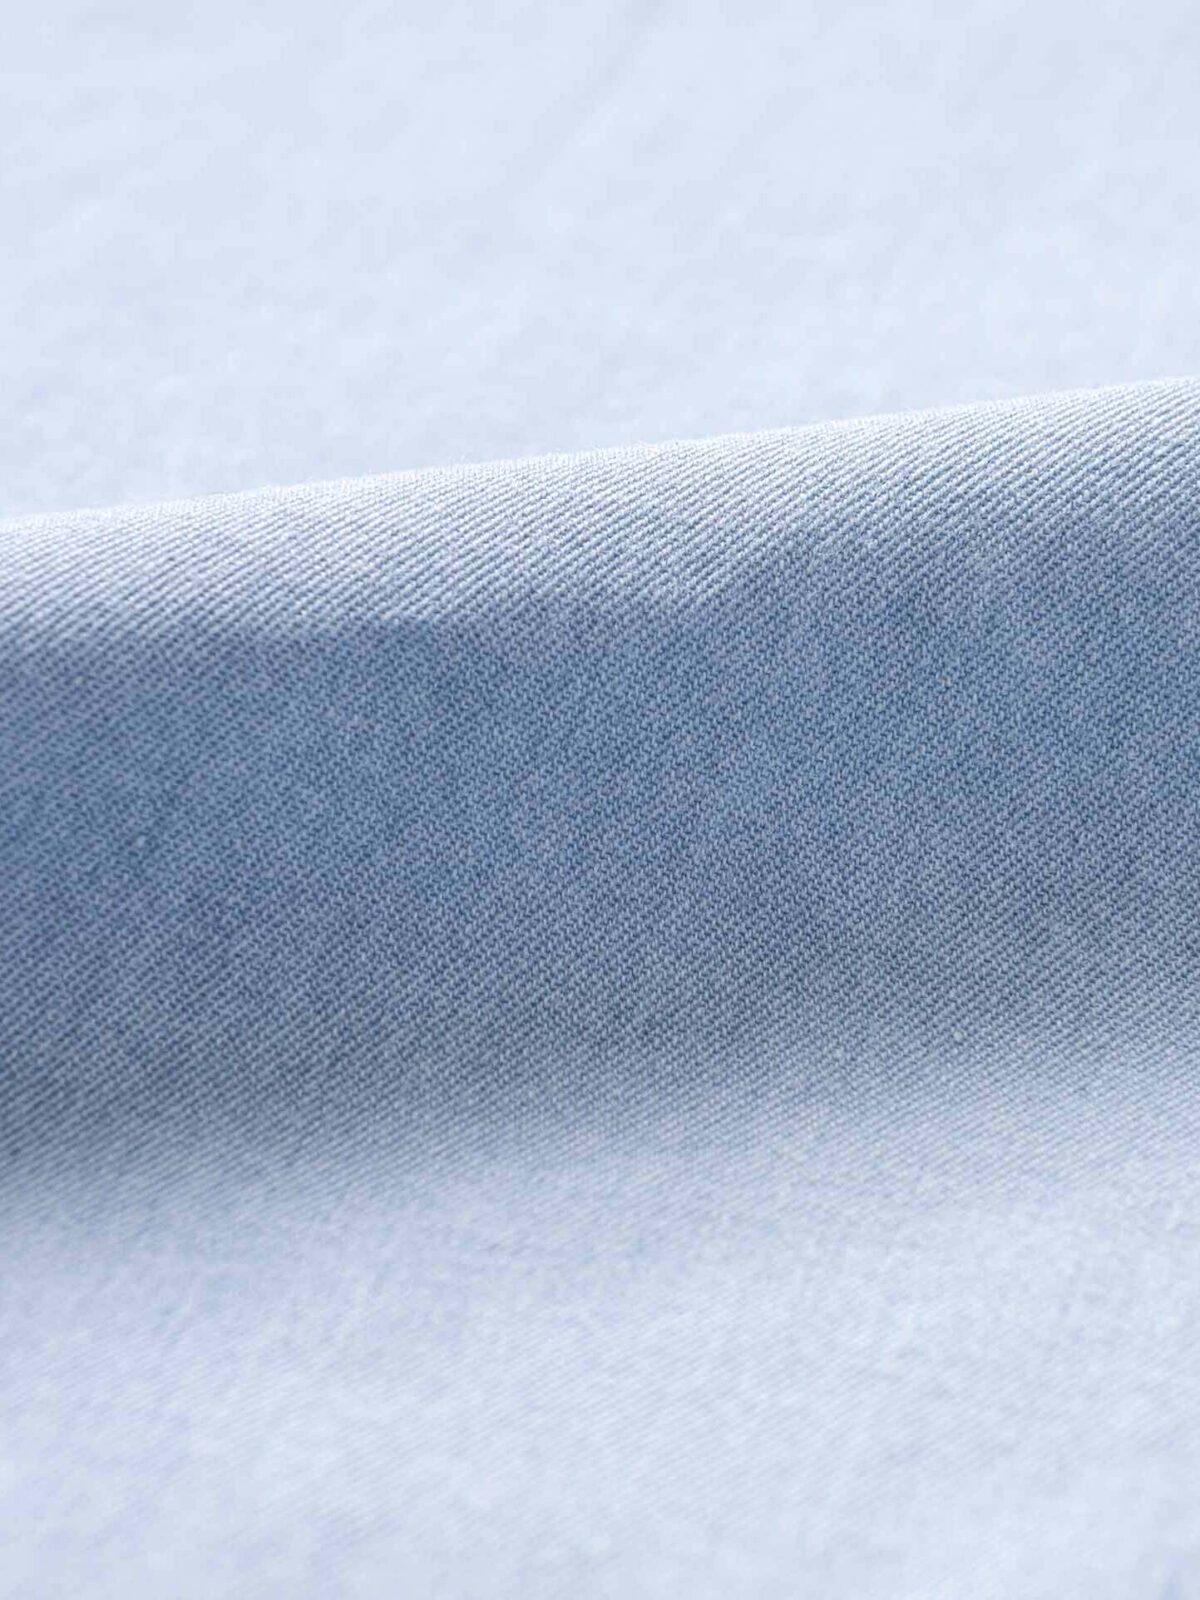 6oz Washed Denim Fabric, 56 inch Width, By the Yard in black, blue 100 %  Cotton | eBay